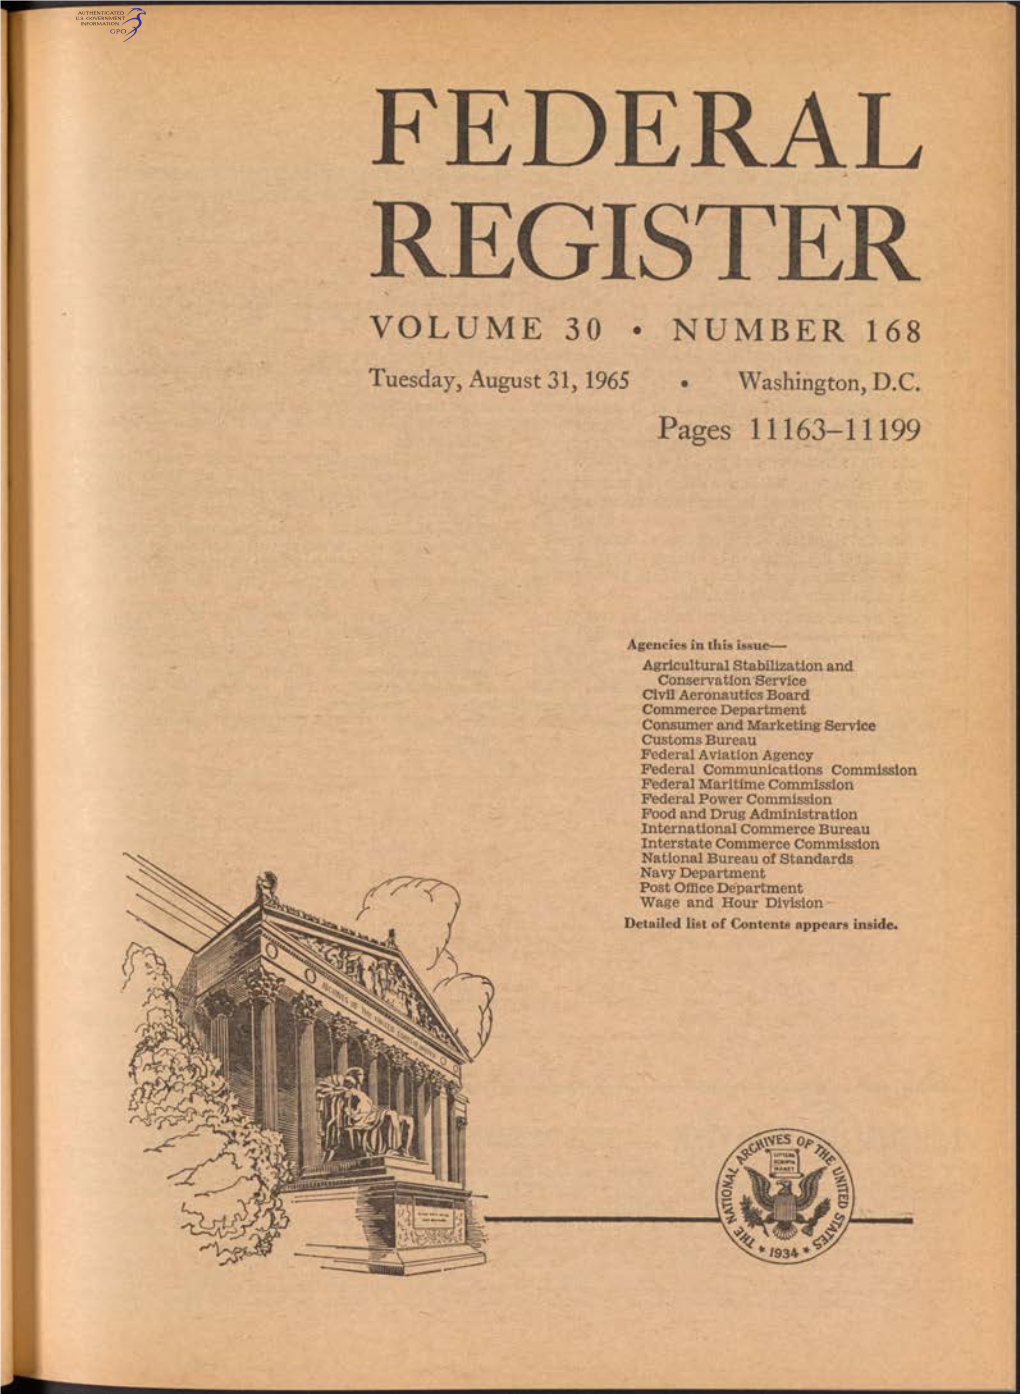 Federal Register Volume 30 • Number 168